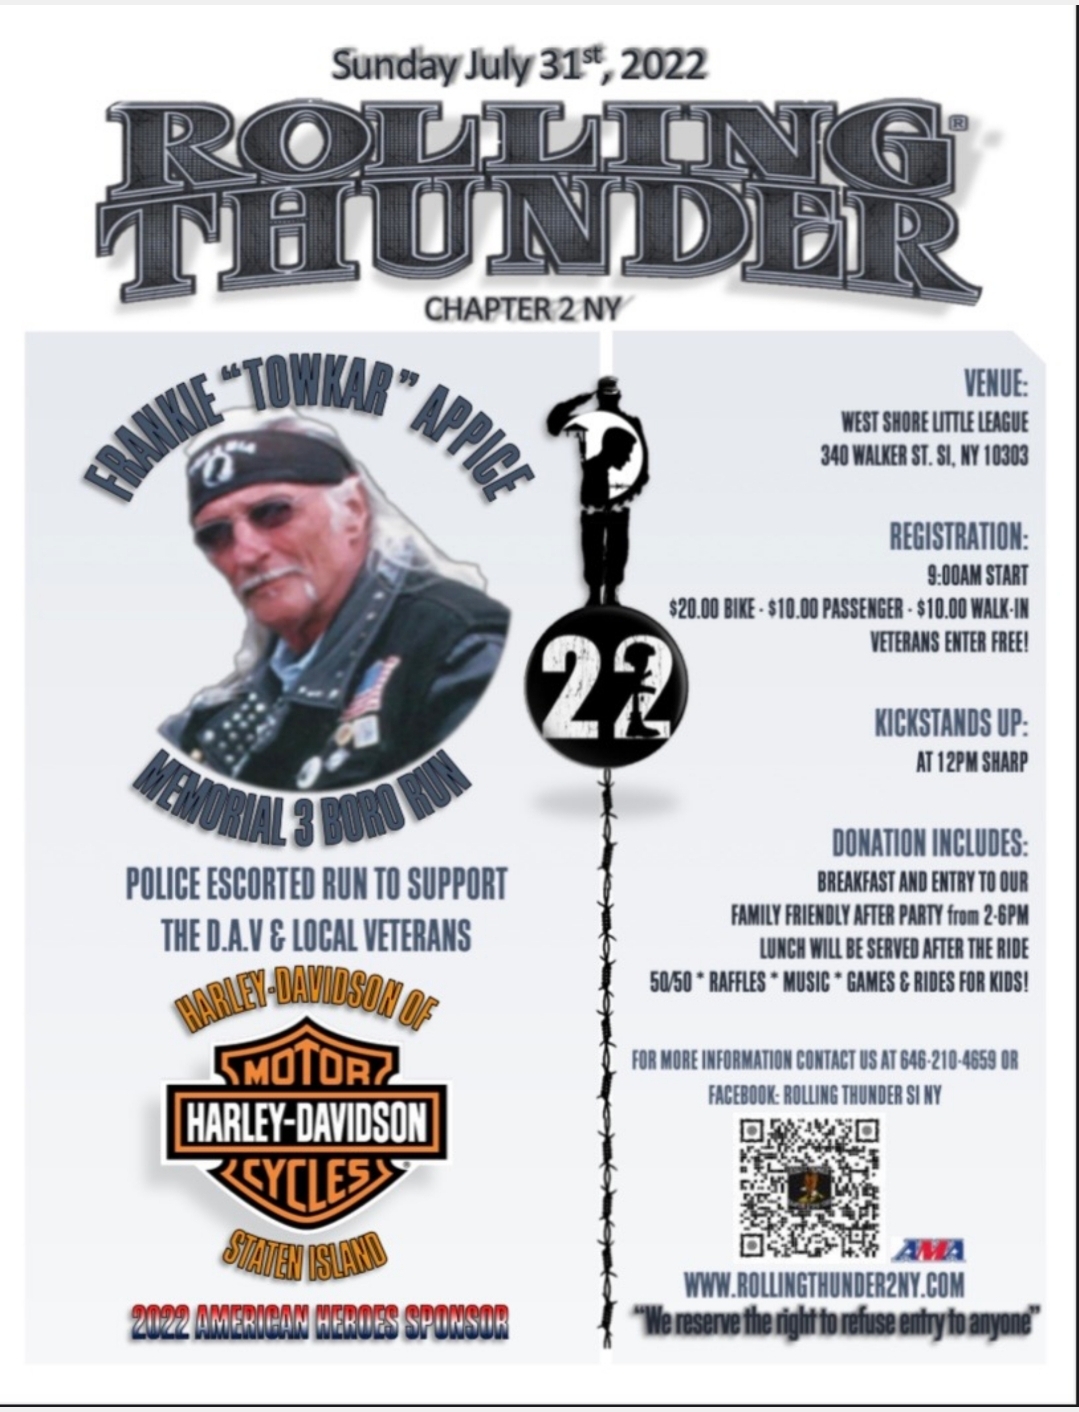 Rolling Thunder Chapter 2 NY The Frankie "Towkar" Appice Memorial 3 Boro Run